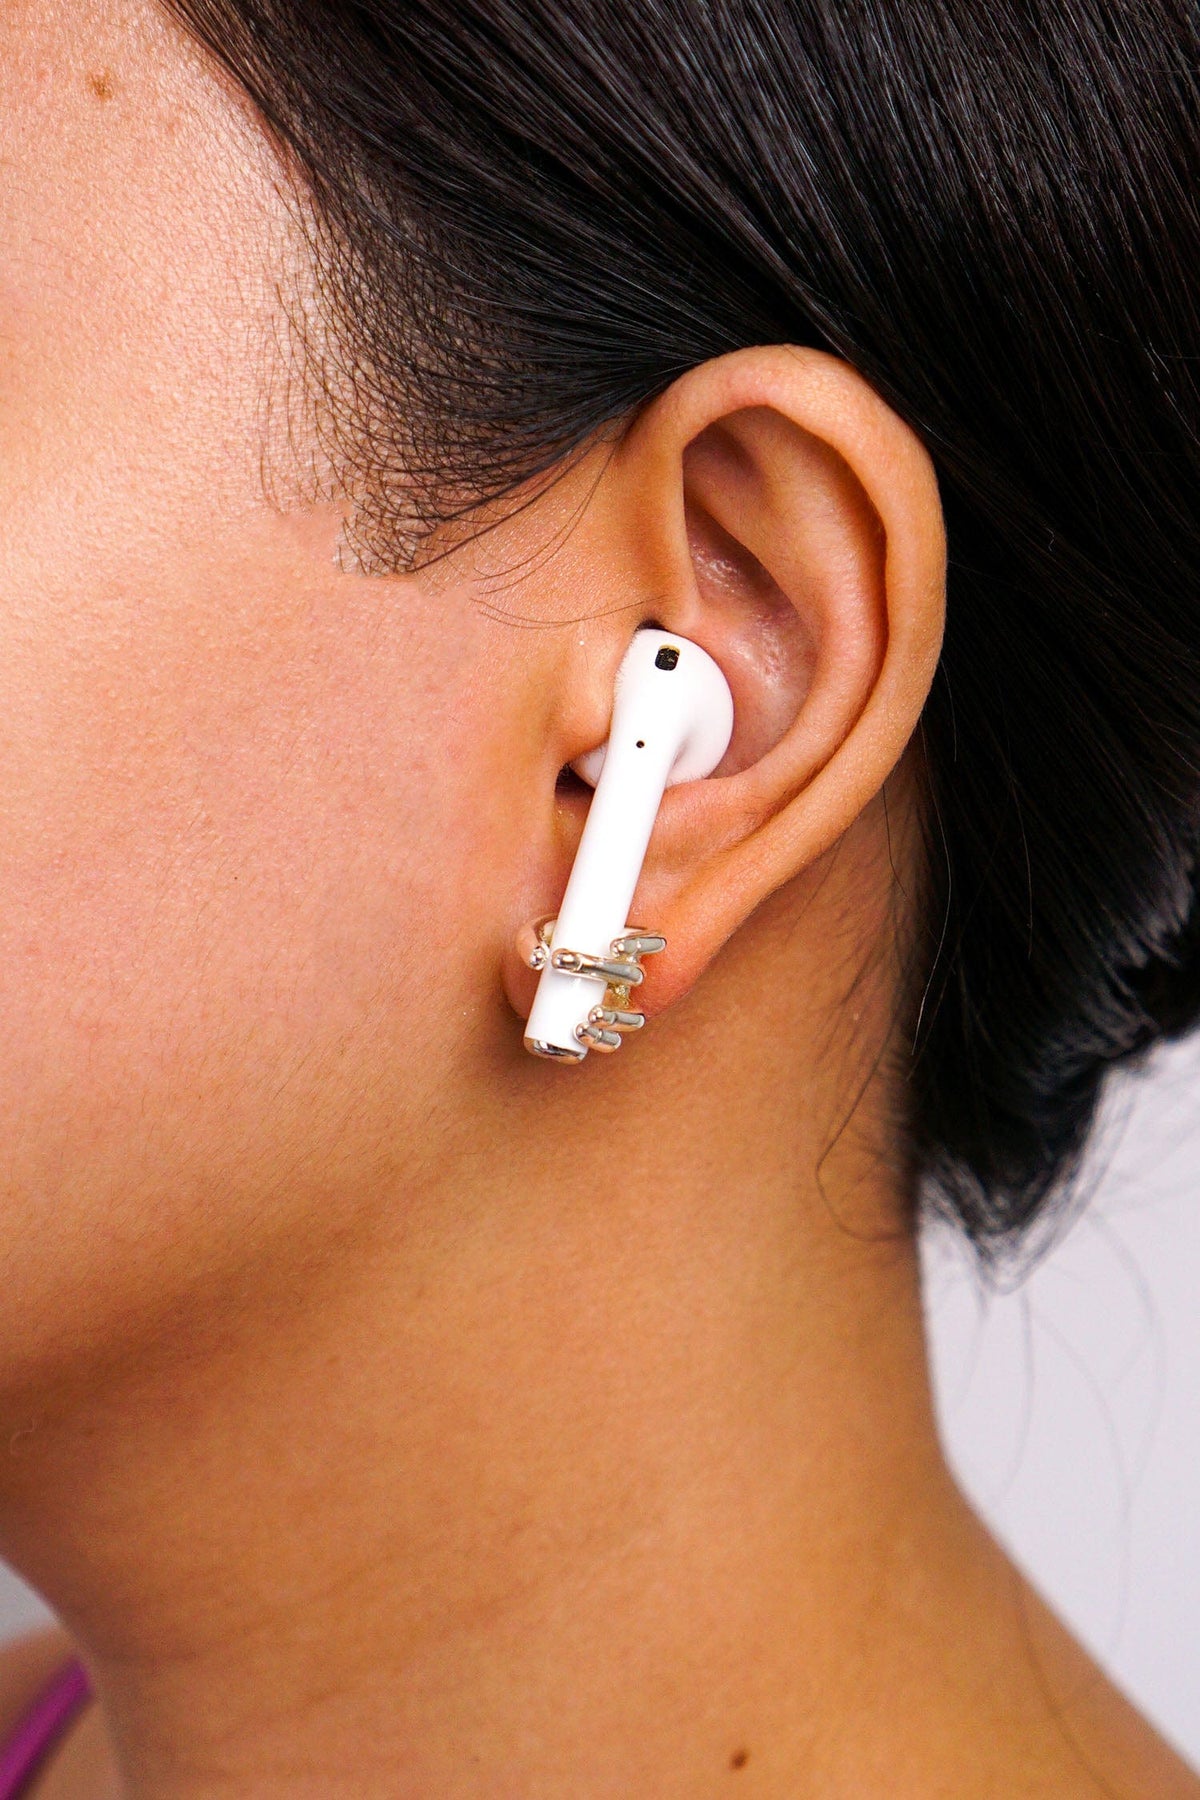 DCD EARRINGS Silver Geometric Hand Stud Earrings